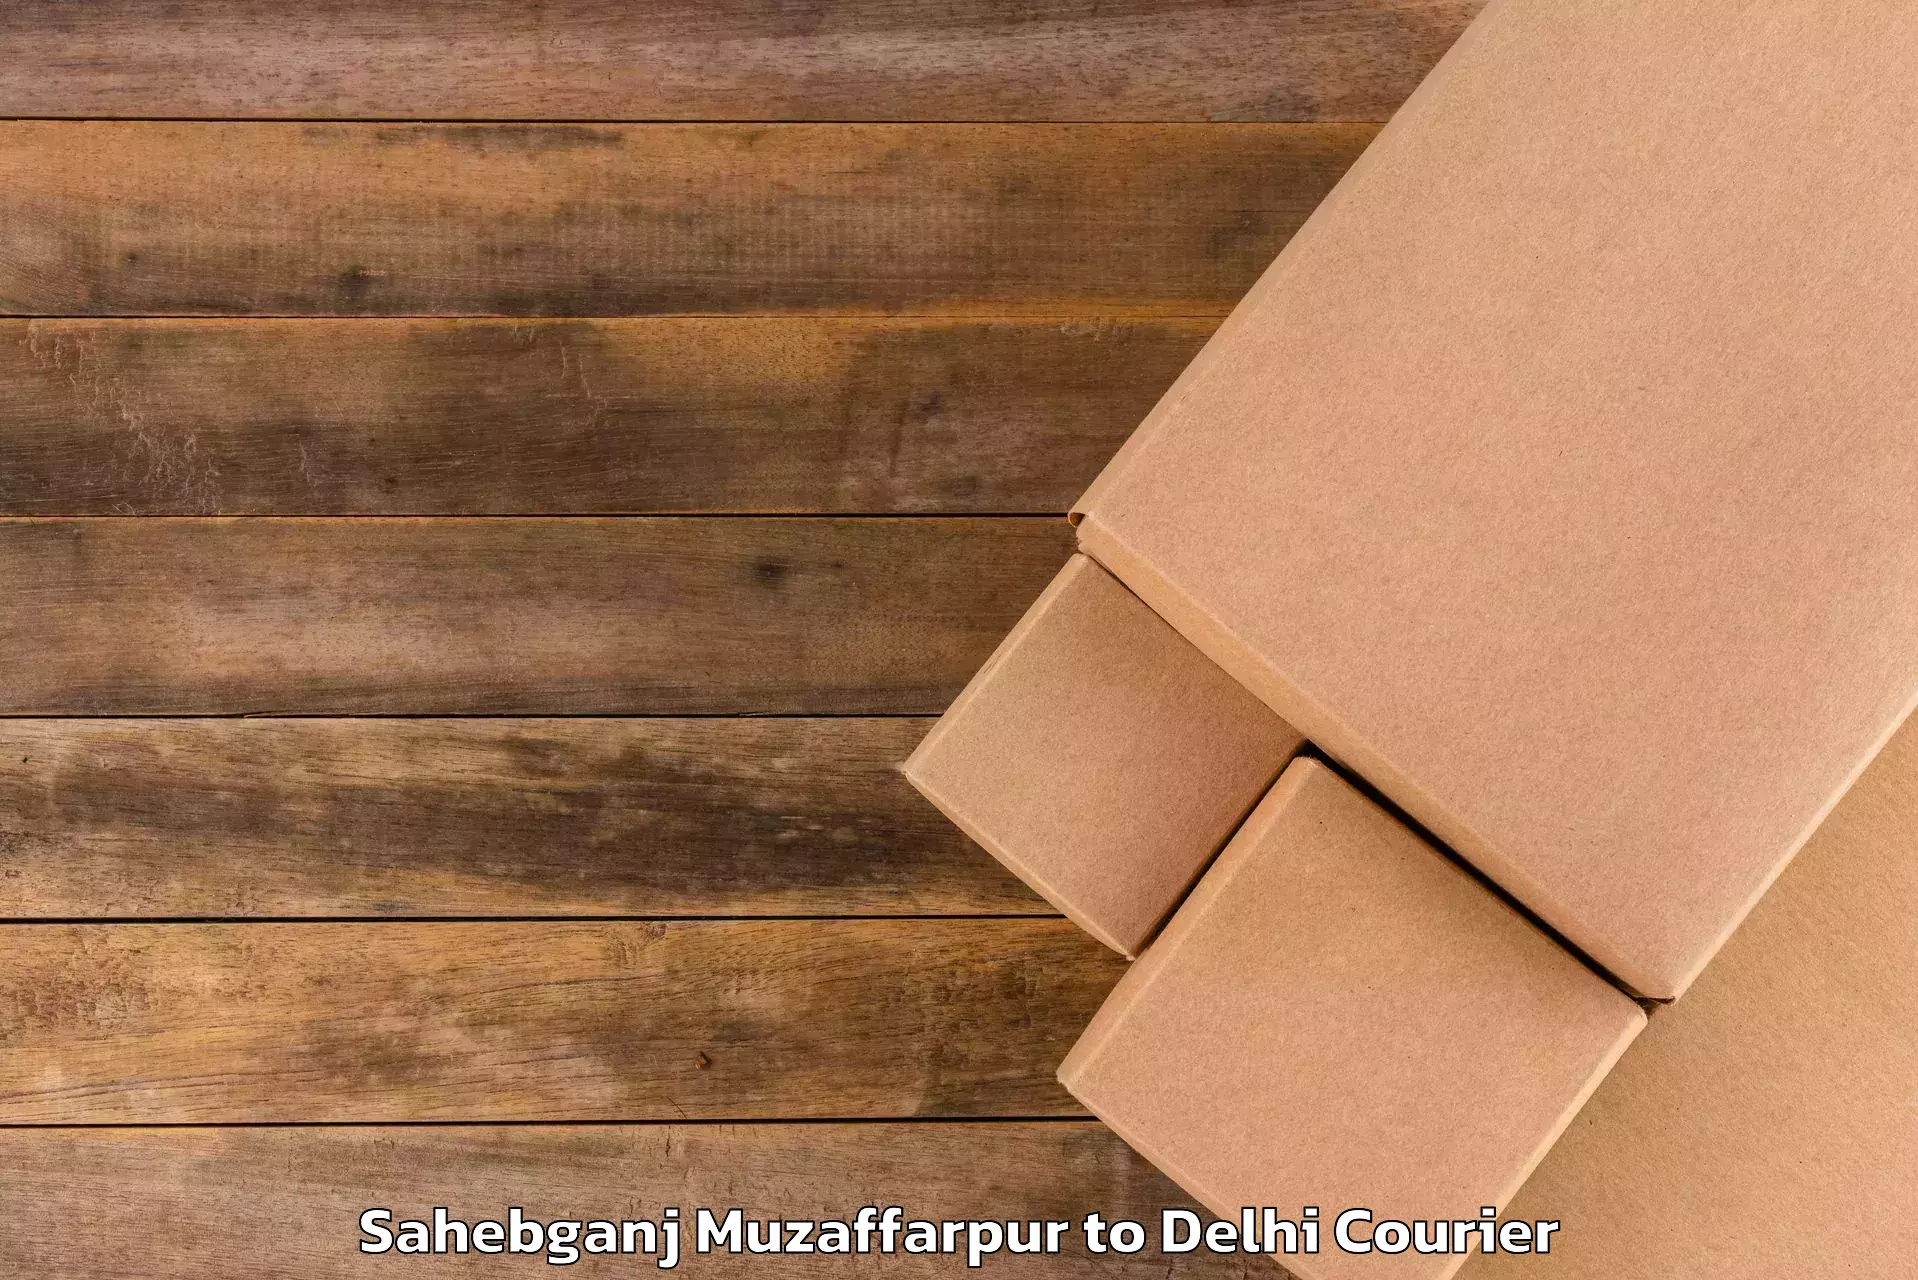 Luggage transport consultancy Sahebganj Muzaffarpur to Subhash Nagar